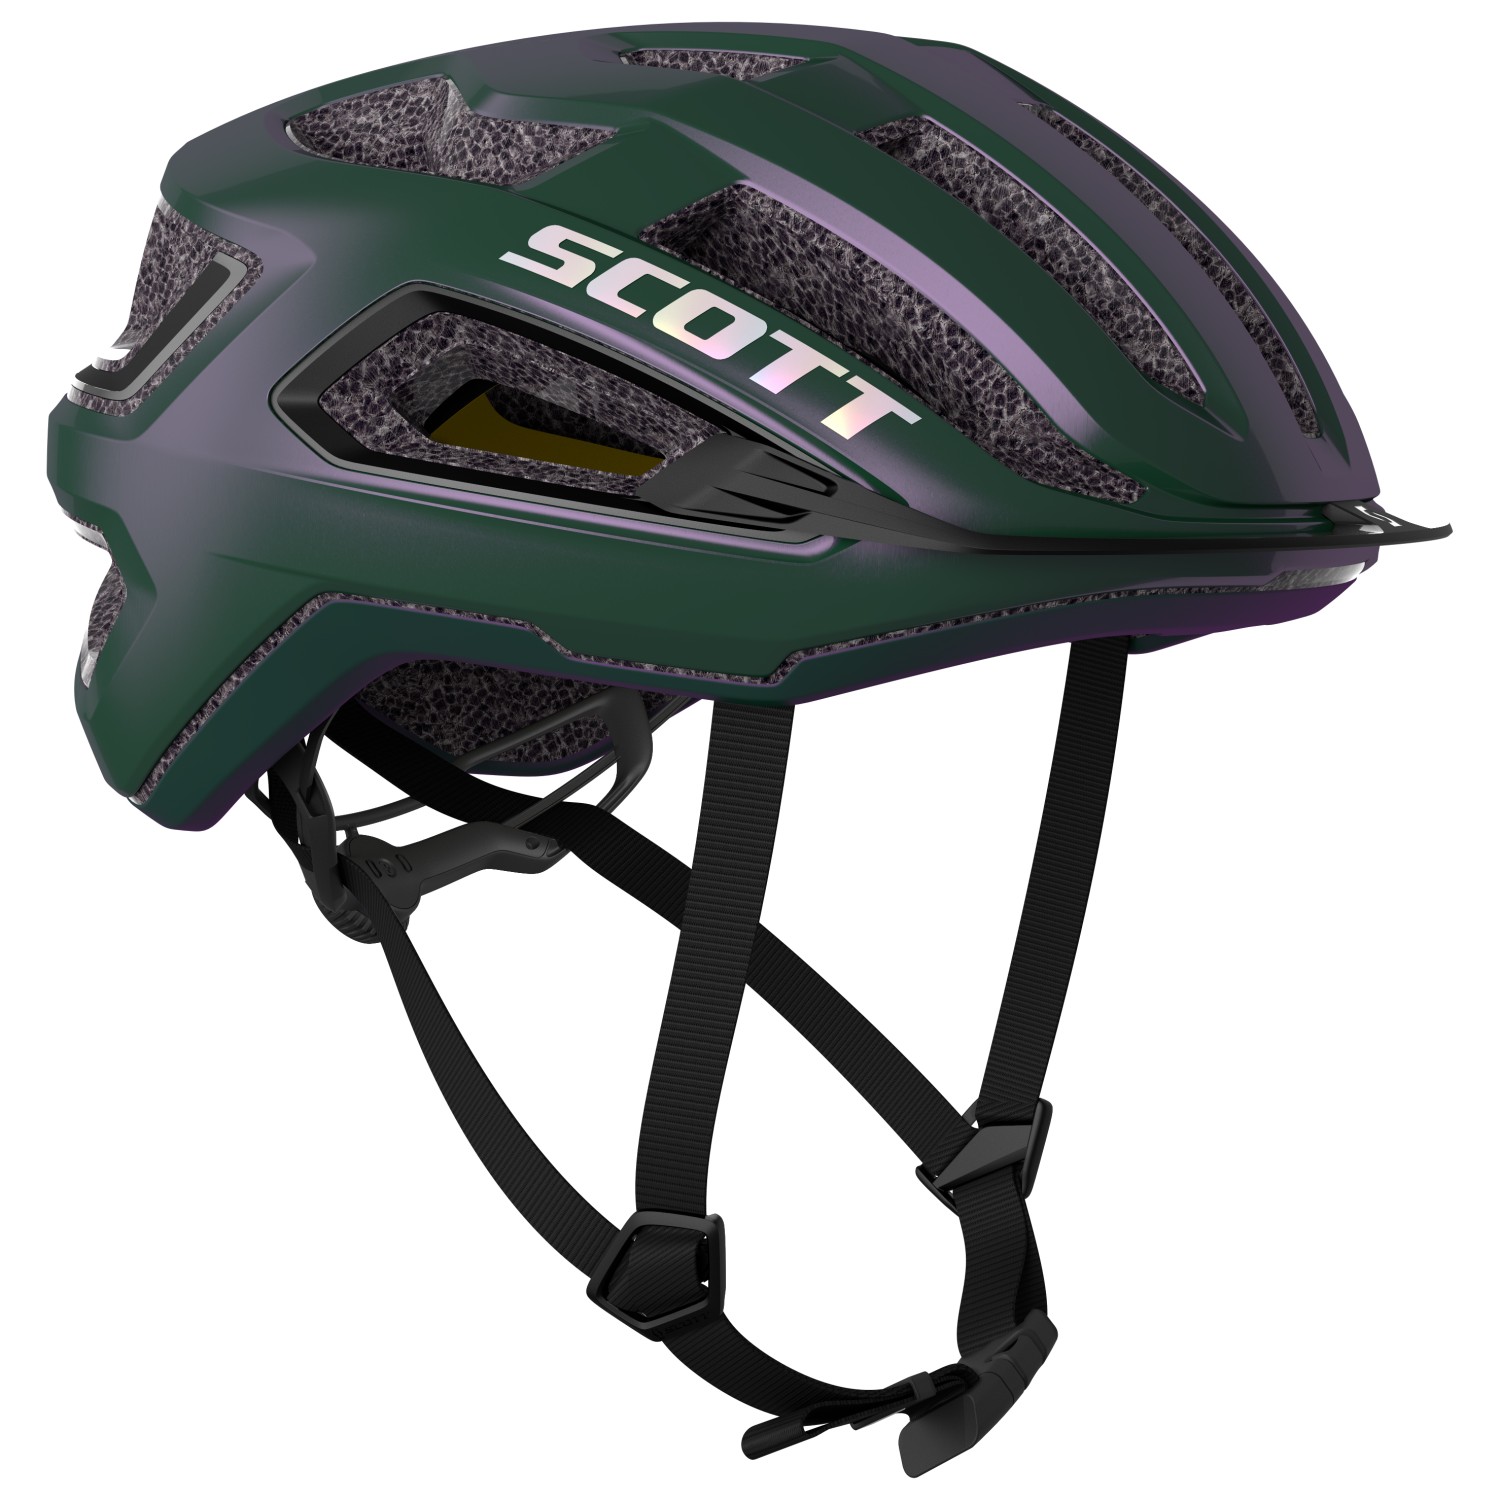 Велосипедный шлем Scott Helmet Arx Plus (CE), цвет Prism Green/Purple scott шлем scott arx plus m 55 59 2018 fiery red